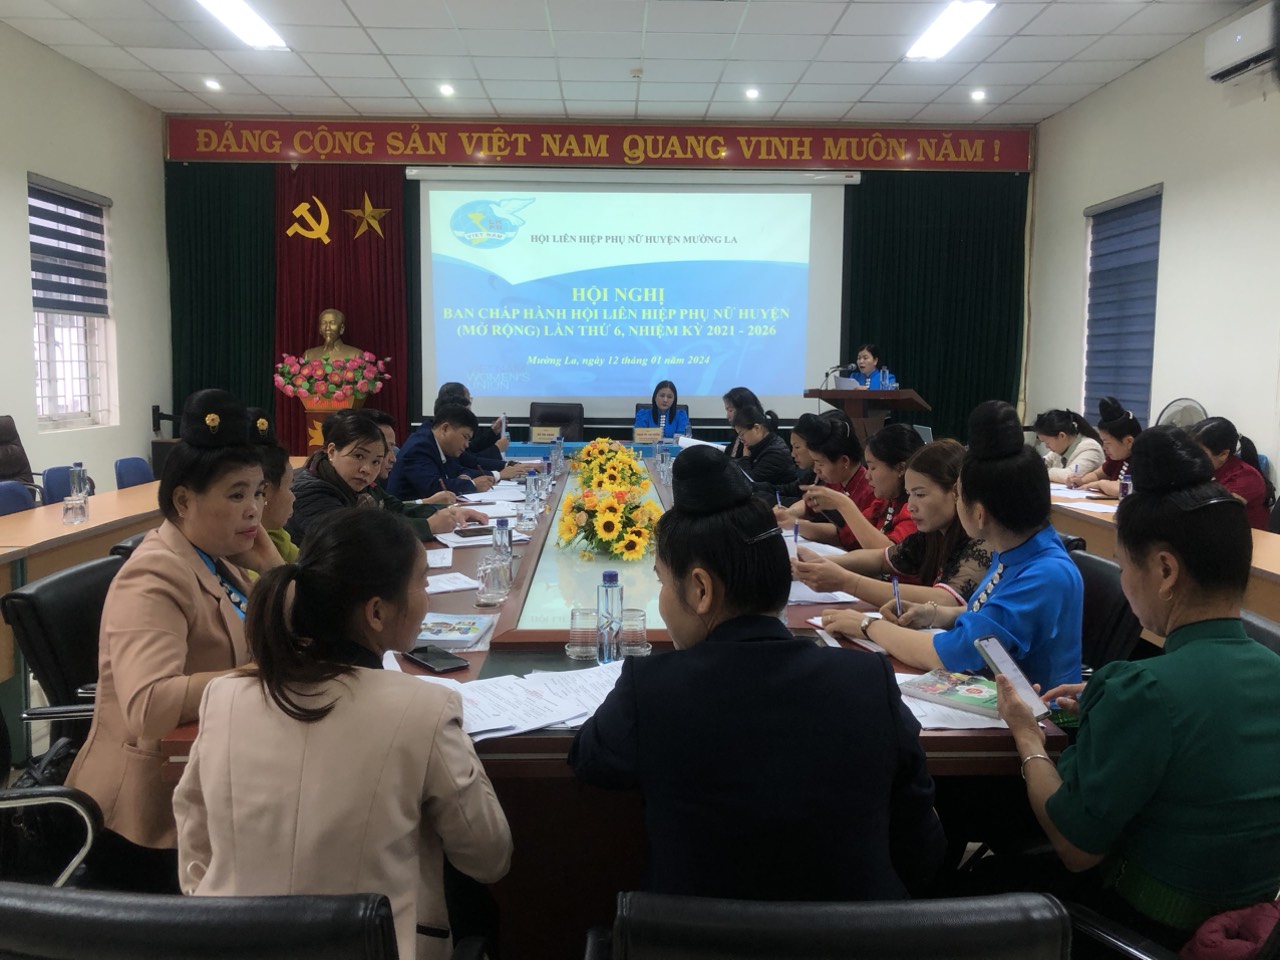 Hội nghị Ban chấp hành Hội Liên hiệp phụ nữ huyện Mường La lần thứ 6, nhiệm kỳ 2021 - 2026